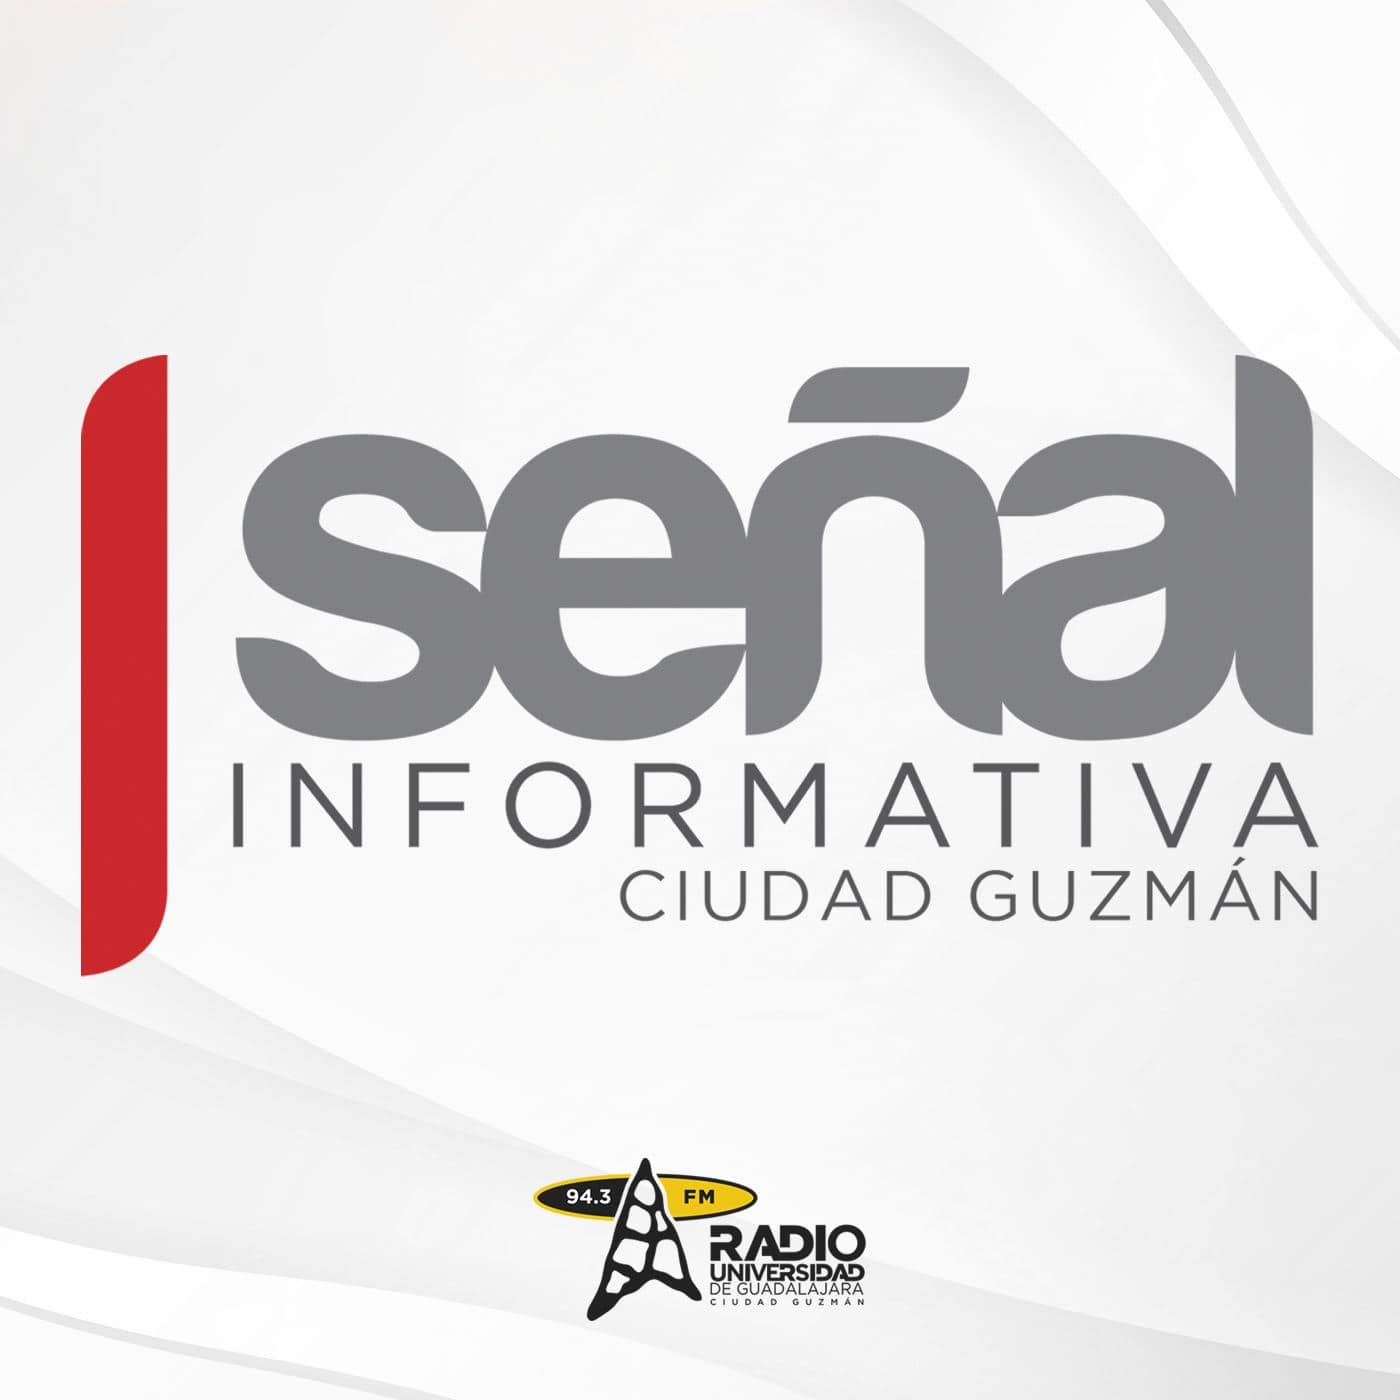 Señal Informativa Ciudad Guzmán, 09 de noviembre